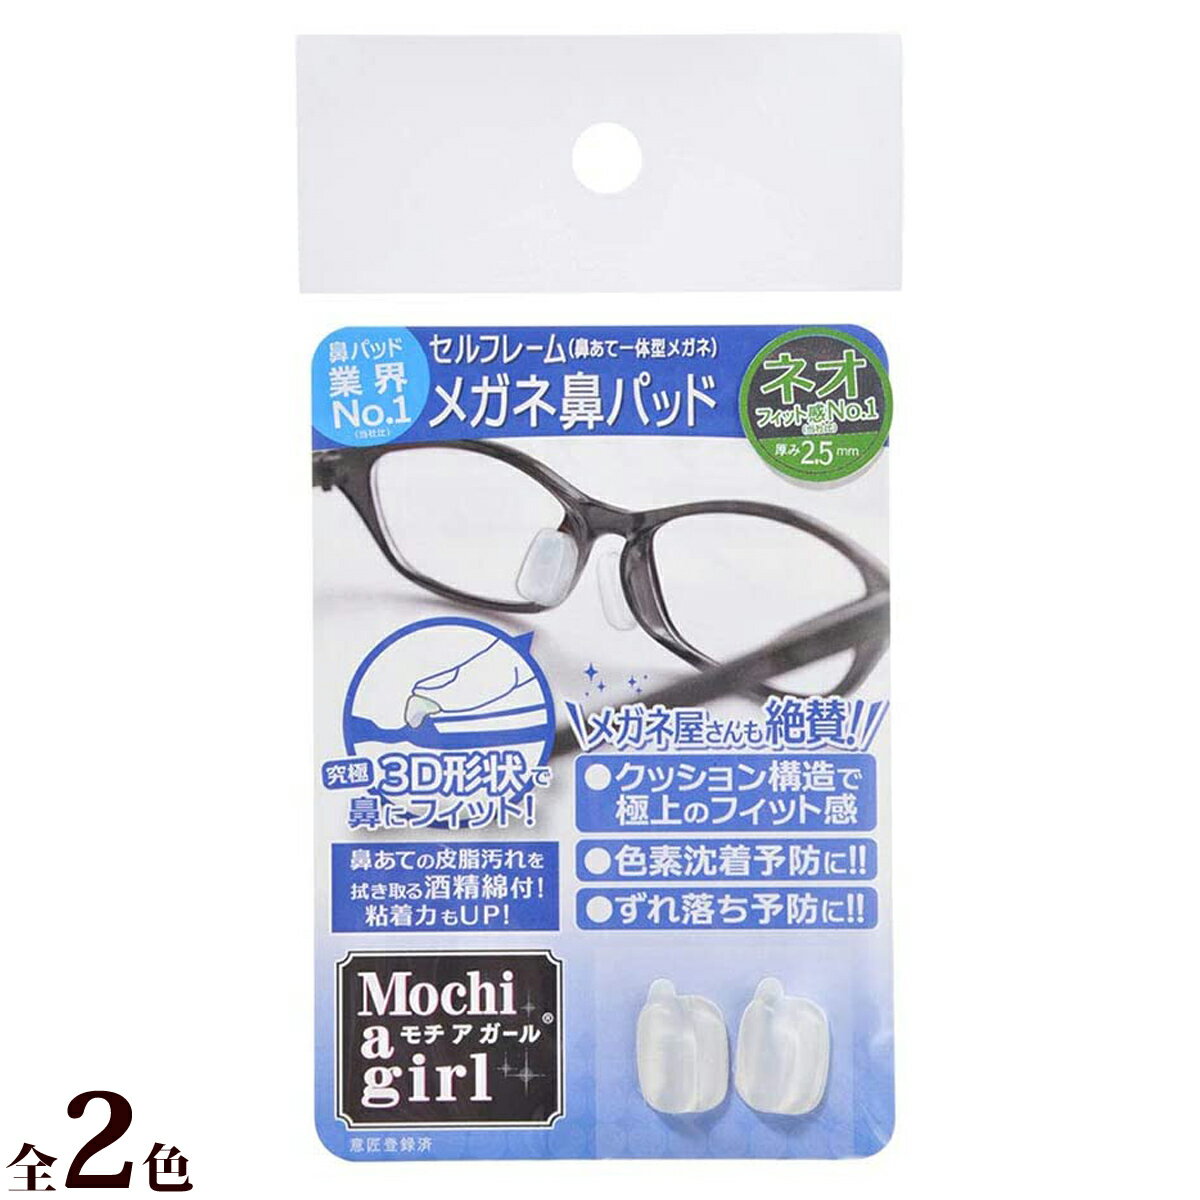 モチアガール ナチュラルプラス メガネ 眼鏡 めがね メガネのズレ防止に 鼻あての保護に 日本製 シリコン製 商品番号:YSM-627程よい厚みでつけごこち抜群!Business快適なメガネ鼻パッドとしておすすめ。鼻あての痛み・ずれを防止。サイズ:厚み1.5mm 縦14mm 横8mmモチアガール 鼻パッドカバータイプ メガネ 眼鏡 めがね メガネのズレ防止に 鼻あての保護に 日本製 シリコン製 商品番号:YSM-628鼻パッドのズレ防止や痛み軽減、色素沈着予防など、メガネ装着時の悩みを解決します。より透明度の高いシリコンを使用し目立ちません。鼻パッド対応サイズ範囲:S/9～12mm、M/12～15mm、L/15～18mmモチアガール ビーズタイプ クリア メガネ 眼鏡 めがね メガネのズレ防止に 耳、こめかみの痛み防止に シリコン製 お肌に優しい 商品番号:YSM-629メガネのズレや痛みから解放!やわらかシリコンでやさしくフィットし、メガネのずれ防止や耳・こめかみの痛みを軽減します。ツルの幅:S/3～5mm、M/4～7mm、L/5mm以上モチアガール ビーズタイプ ブラック メガネ 眼鏡 めがね メガネのズレ防止に 耳、こめかみの痛み防止に シリコン製 お肌に優しい 商品番号:YSM-630メガネのズレや痛みから解放!やわらかシリコンでやさしくフィットし、メガネのずれ防止や耳・こめかみの痛みを軽減します。ツルの幅:S/3～5mm、M/4～7mm、L/5mm以上4589975120044 4589975120167　ls@YSM-626モチアガール ネオ メガネ 眼鏡 めがね メガネのズレ防止に 鼻あての保護に 日本製 シリコン製 63702000-04 63702000-08クッション構造で極上のフィット感!セルフレームメガネ向き。Business快適なメガネ鼻パッドとしておすすめ。鼻あての痛み・ずれを防止。厚み:2.5mmBusiness快適なメガネ鼻パッドとしておすすめ。鼻あての痛み・ずれを防止クッション構造で極上のフィット感!セルフレーム(鼻あて一体型)メガネ向きフィット感No.1(メーカー比)究極3D形状で鼻にフィット色素沈着防止に!ズレ落ち予防に!鼻あての皮脂汚れを拭き取る酒精綿付!粘着力もUP!使い方:1)メガネの鼻あて部分の汚れを附属の「酒精綿」でしっかり拭き取り乾かす。2)「モチアガール」の剥離紙を剥がす。※粘着部分に触れないようご注意下さい。3)鼻あての自分に合う位置に、「モチアガール」をしっかり貼り付ける。※一日置いておくと粘着力が高まります。&nbsp;問い合わせ品番：63702000-04 / 63702000-08モチアガール ネオ メガネ 眼鏡 めがね メガネのズレ防止に 鼻あての保護に 日本製 シリコン製 スペック厚み2.5mm材質シリコン生産国日本製 名古屋眼鏡株式会社 ※仕様及び外観は改善のため、予告なく変更することがあります。